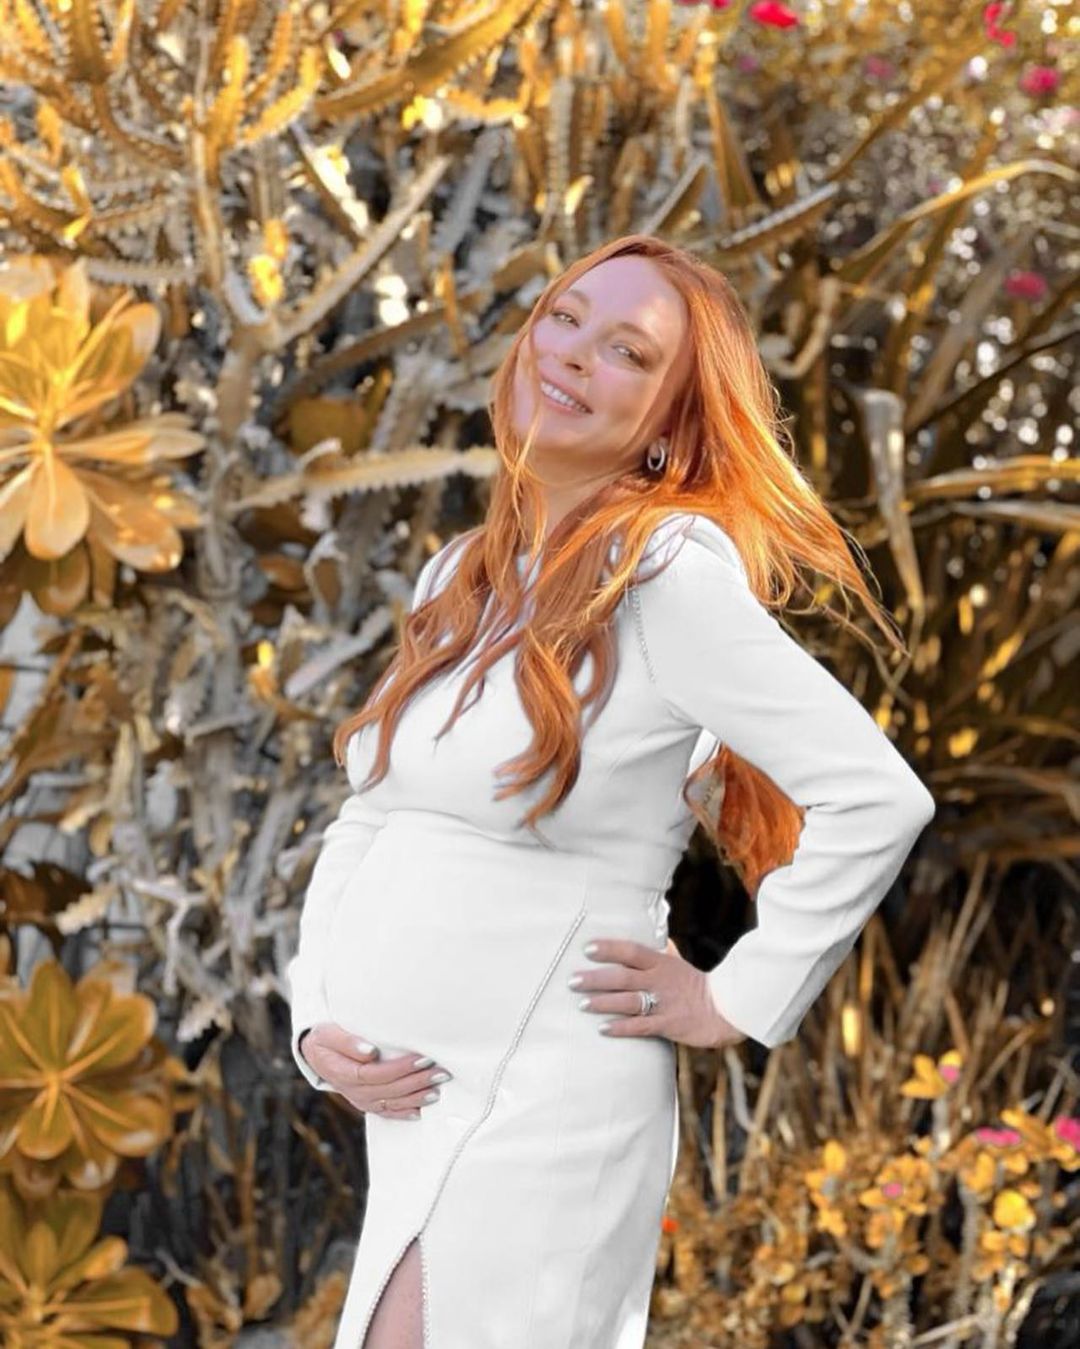 Lindsay Lohan anunció su embarazo y mostró cómo crece su pancita | eltrece